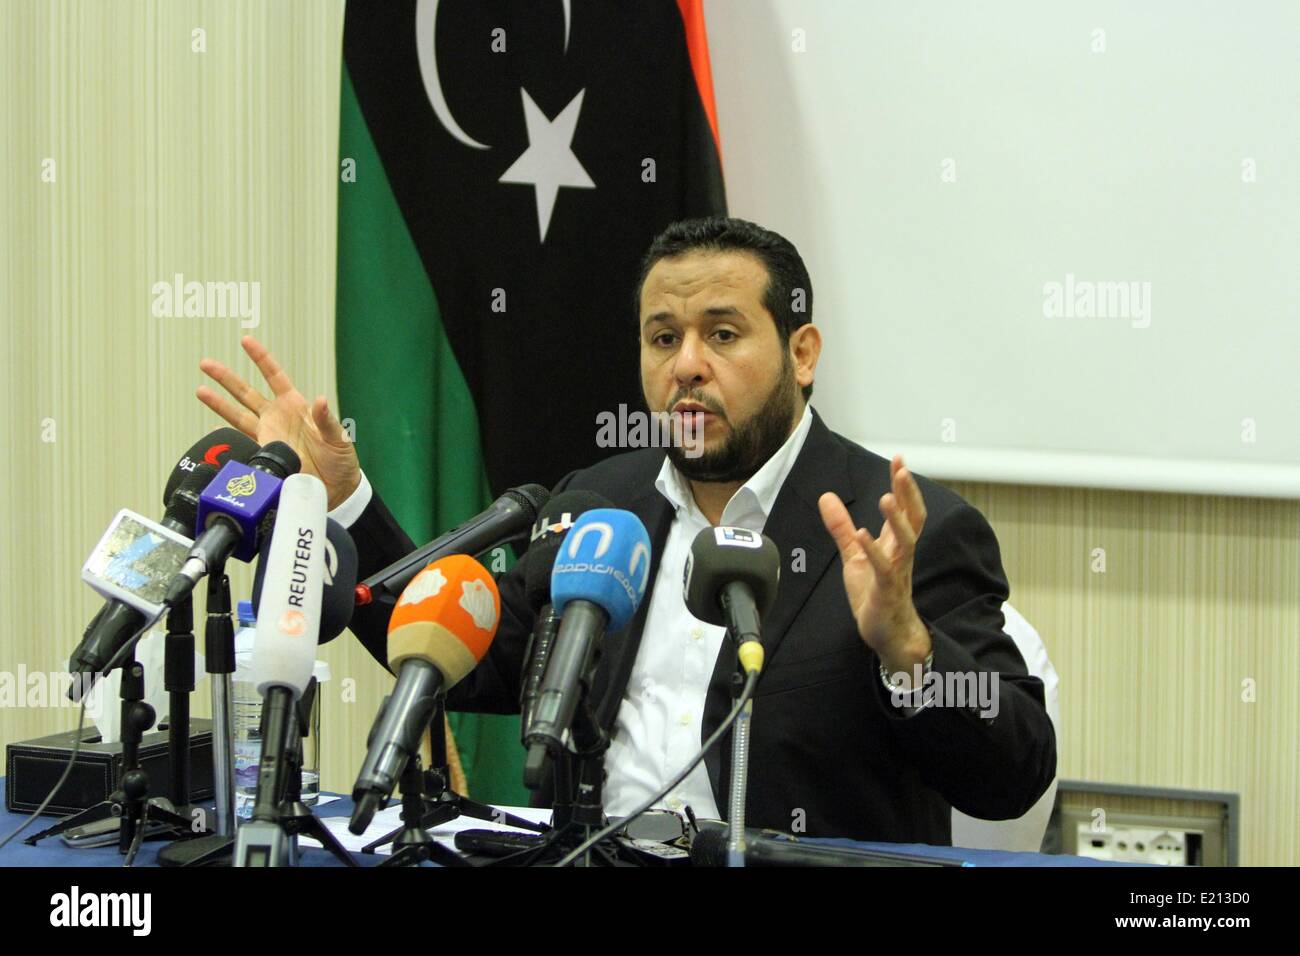 (140612) -- Trípoli, 12 de junio de 2014 (Xinhua) -- El líder del Partido Al-Watan Abdelhakim Belhadj, habla durante una conferencia de prensa en Trípoli, Libia, el 12 de junio de 2014. Belhadj dijo que su partido islamista conservador Libia apoyará la construcción de un estado civil en virtud de la democracia constitucional, condenando los asesinatos y secuestros. (Xinhua/Hamza Turkia) Foto de stock